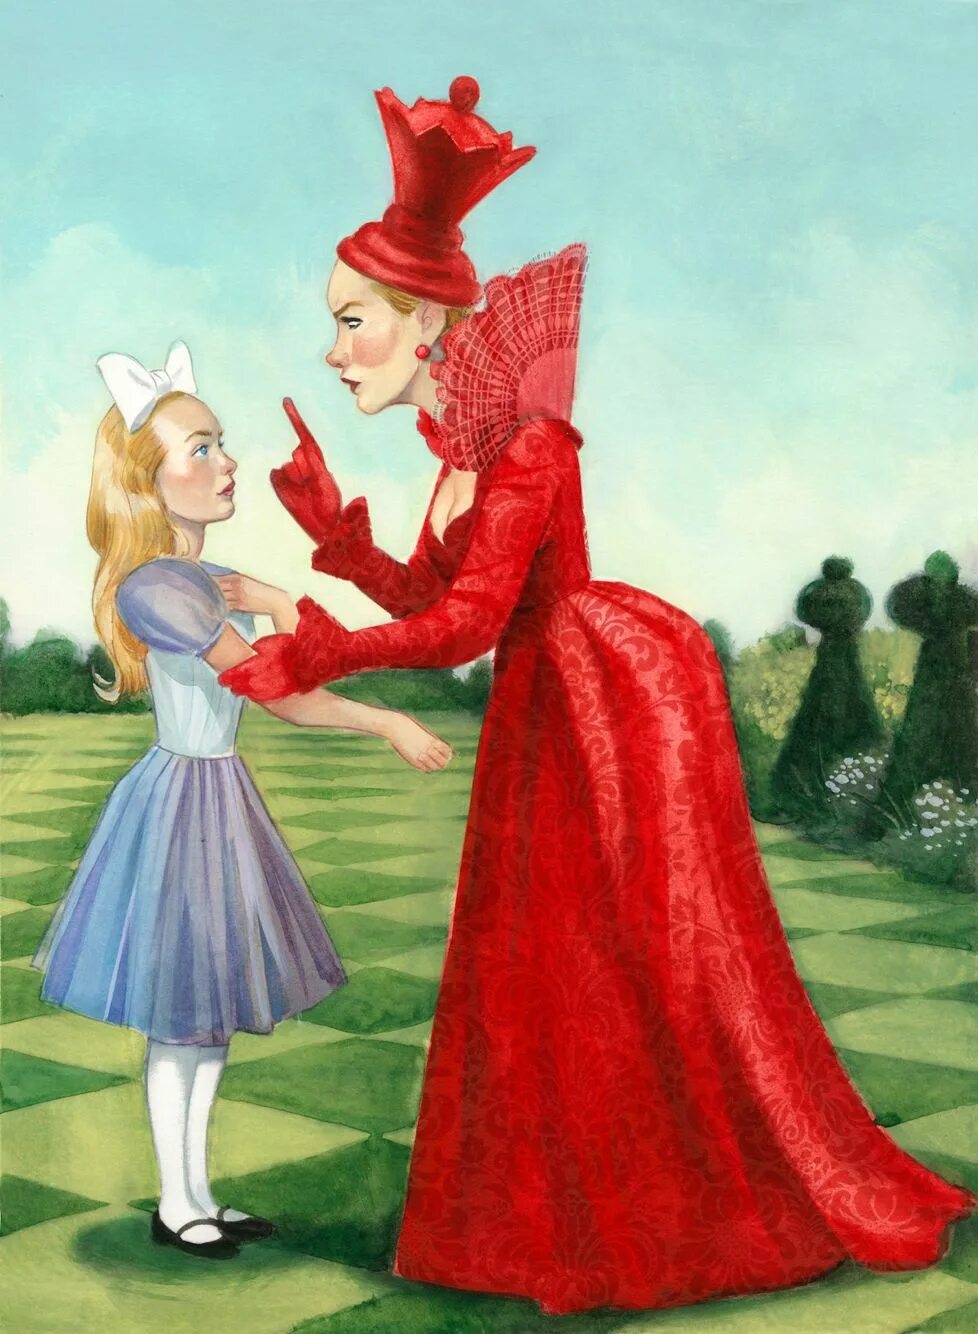 Сказку 3 алиса. Льюис Кэрролл Алиса в стране чудес Королева. Кэрролл Алиса в Зазеркалье иллюстрации. Королева из Алисы в Зазеркалье. Королева Льюис Кэрролла из Алиса в Зазеркалье.